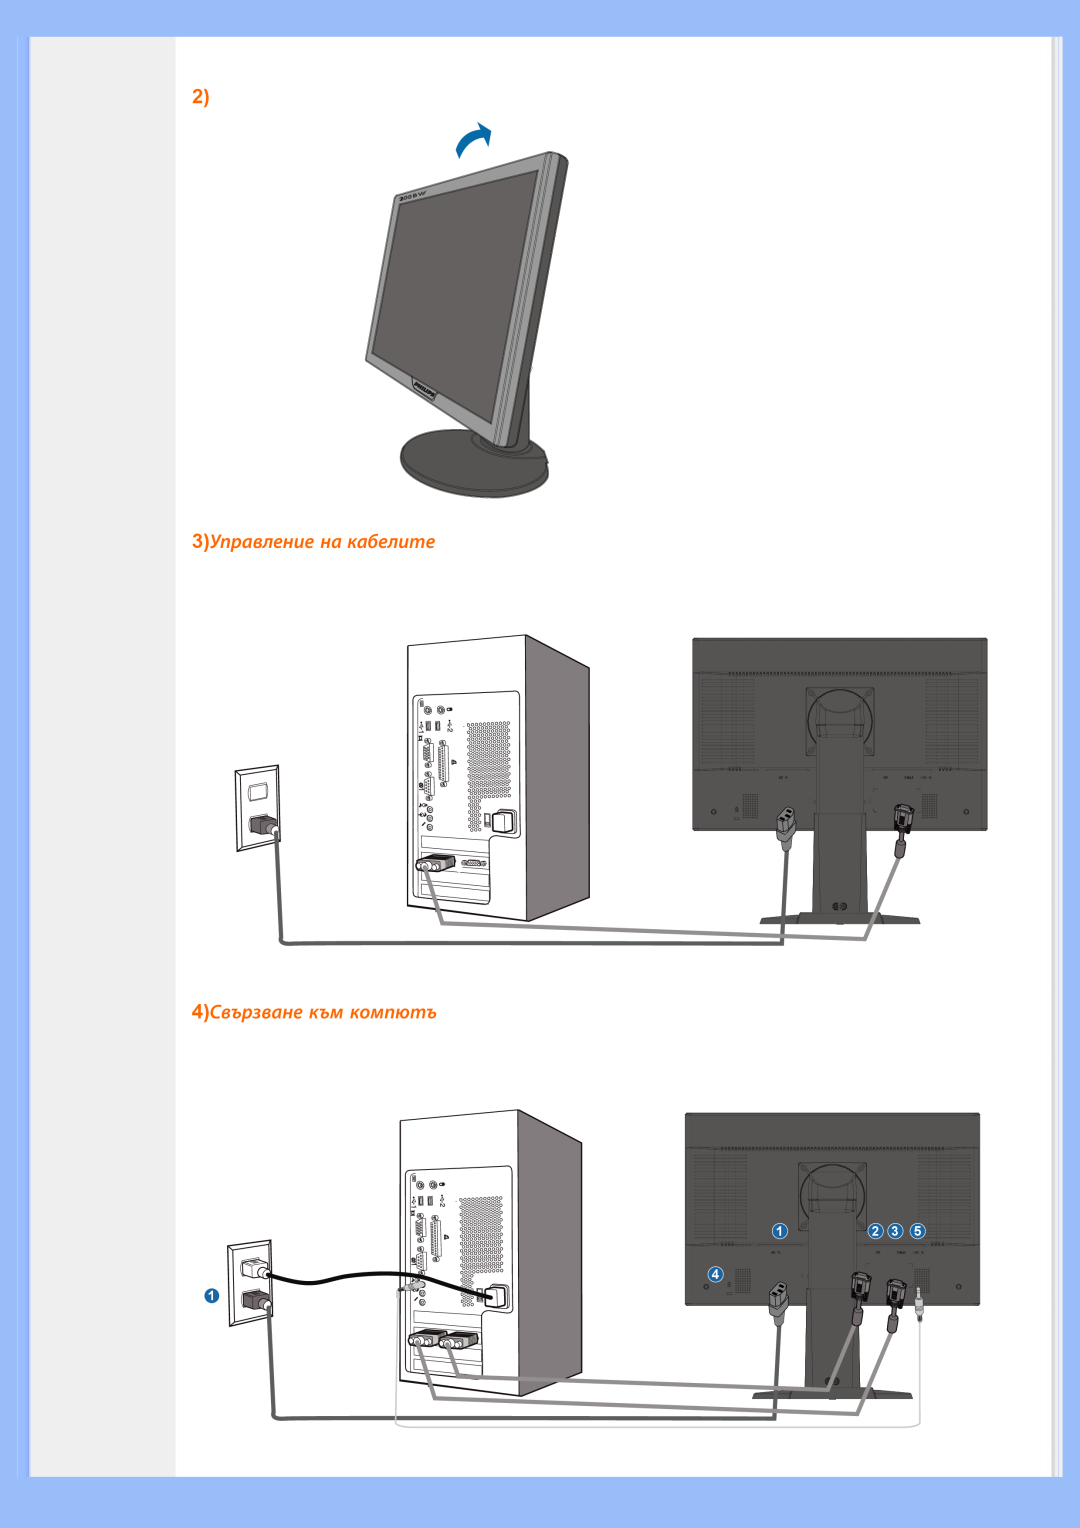 Philips 200BW8 user manual 3Управление на кабелите 4Свързване към компютъ 